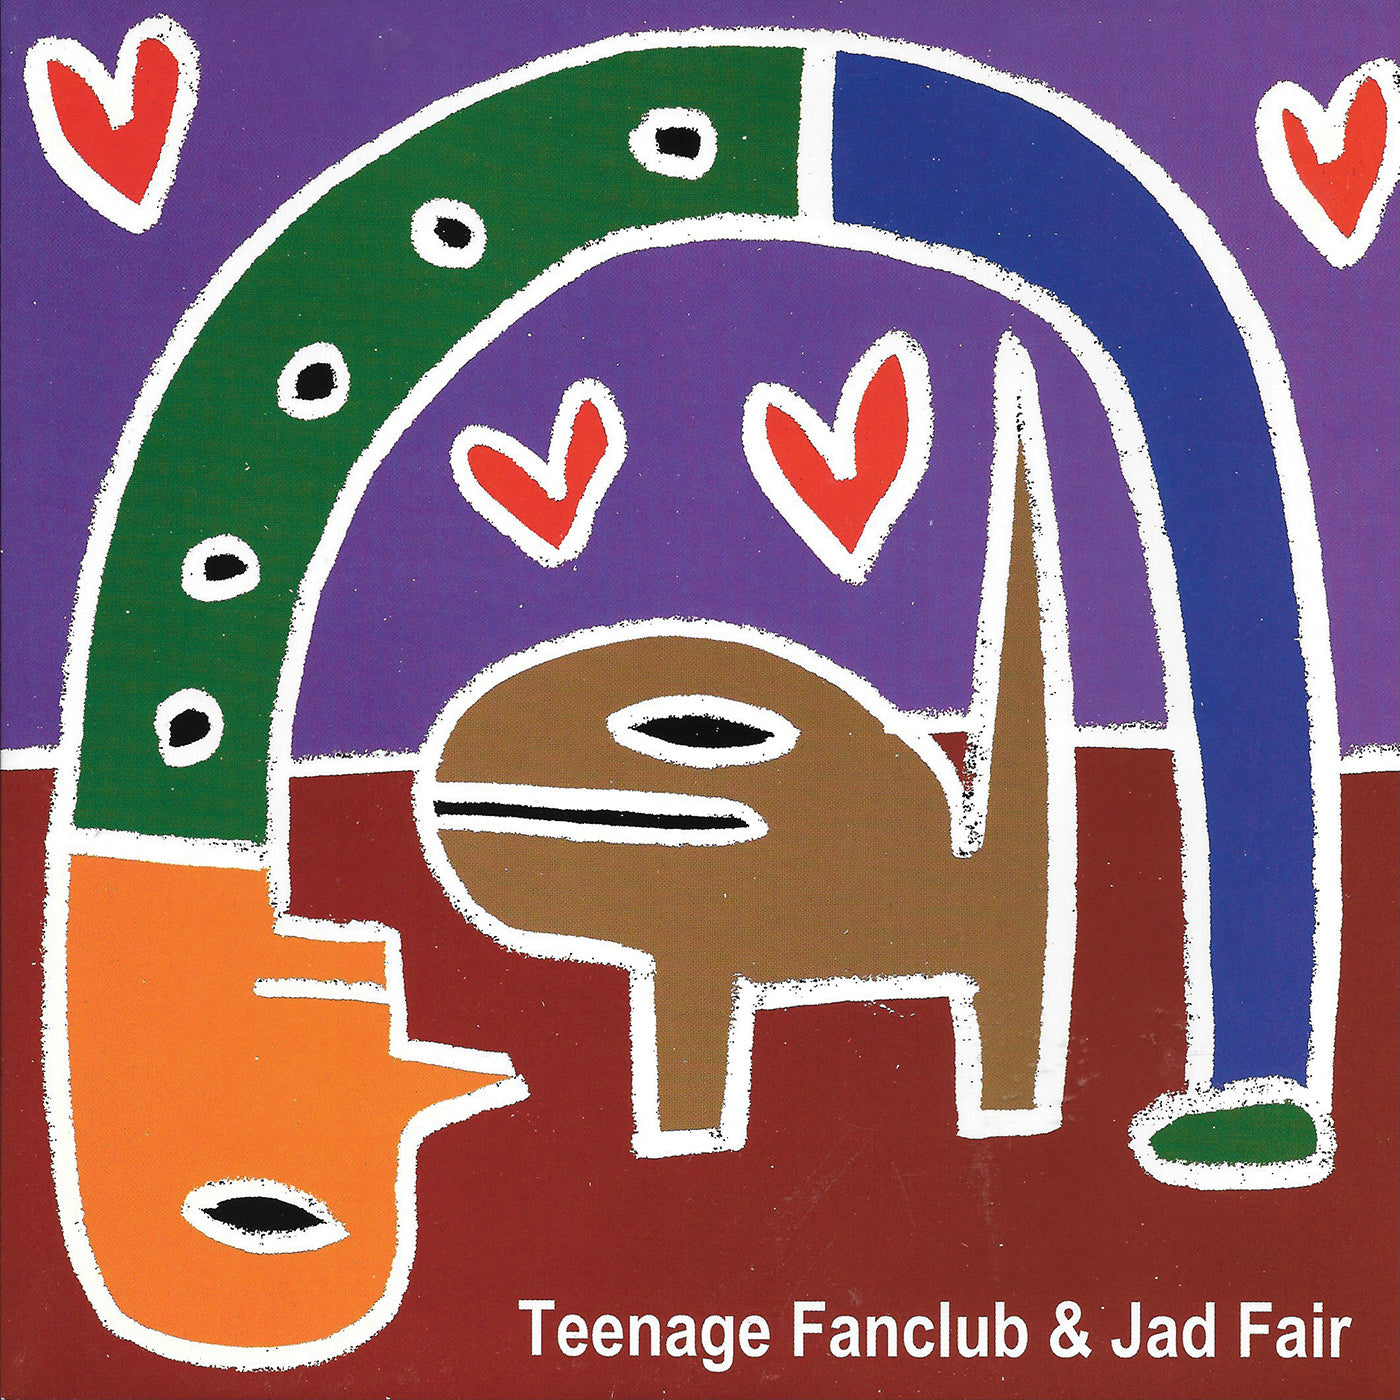 v278 - Teenage Fanclub & Jad Fair - "Always In My Heart / Let's Celebrate"